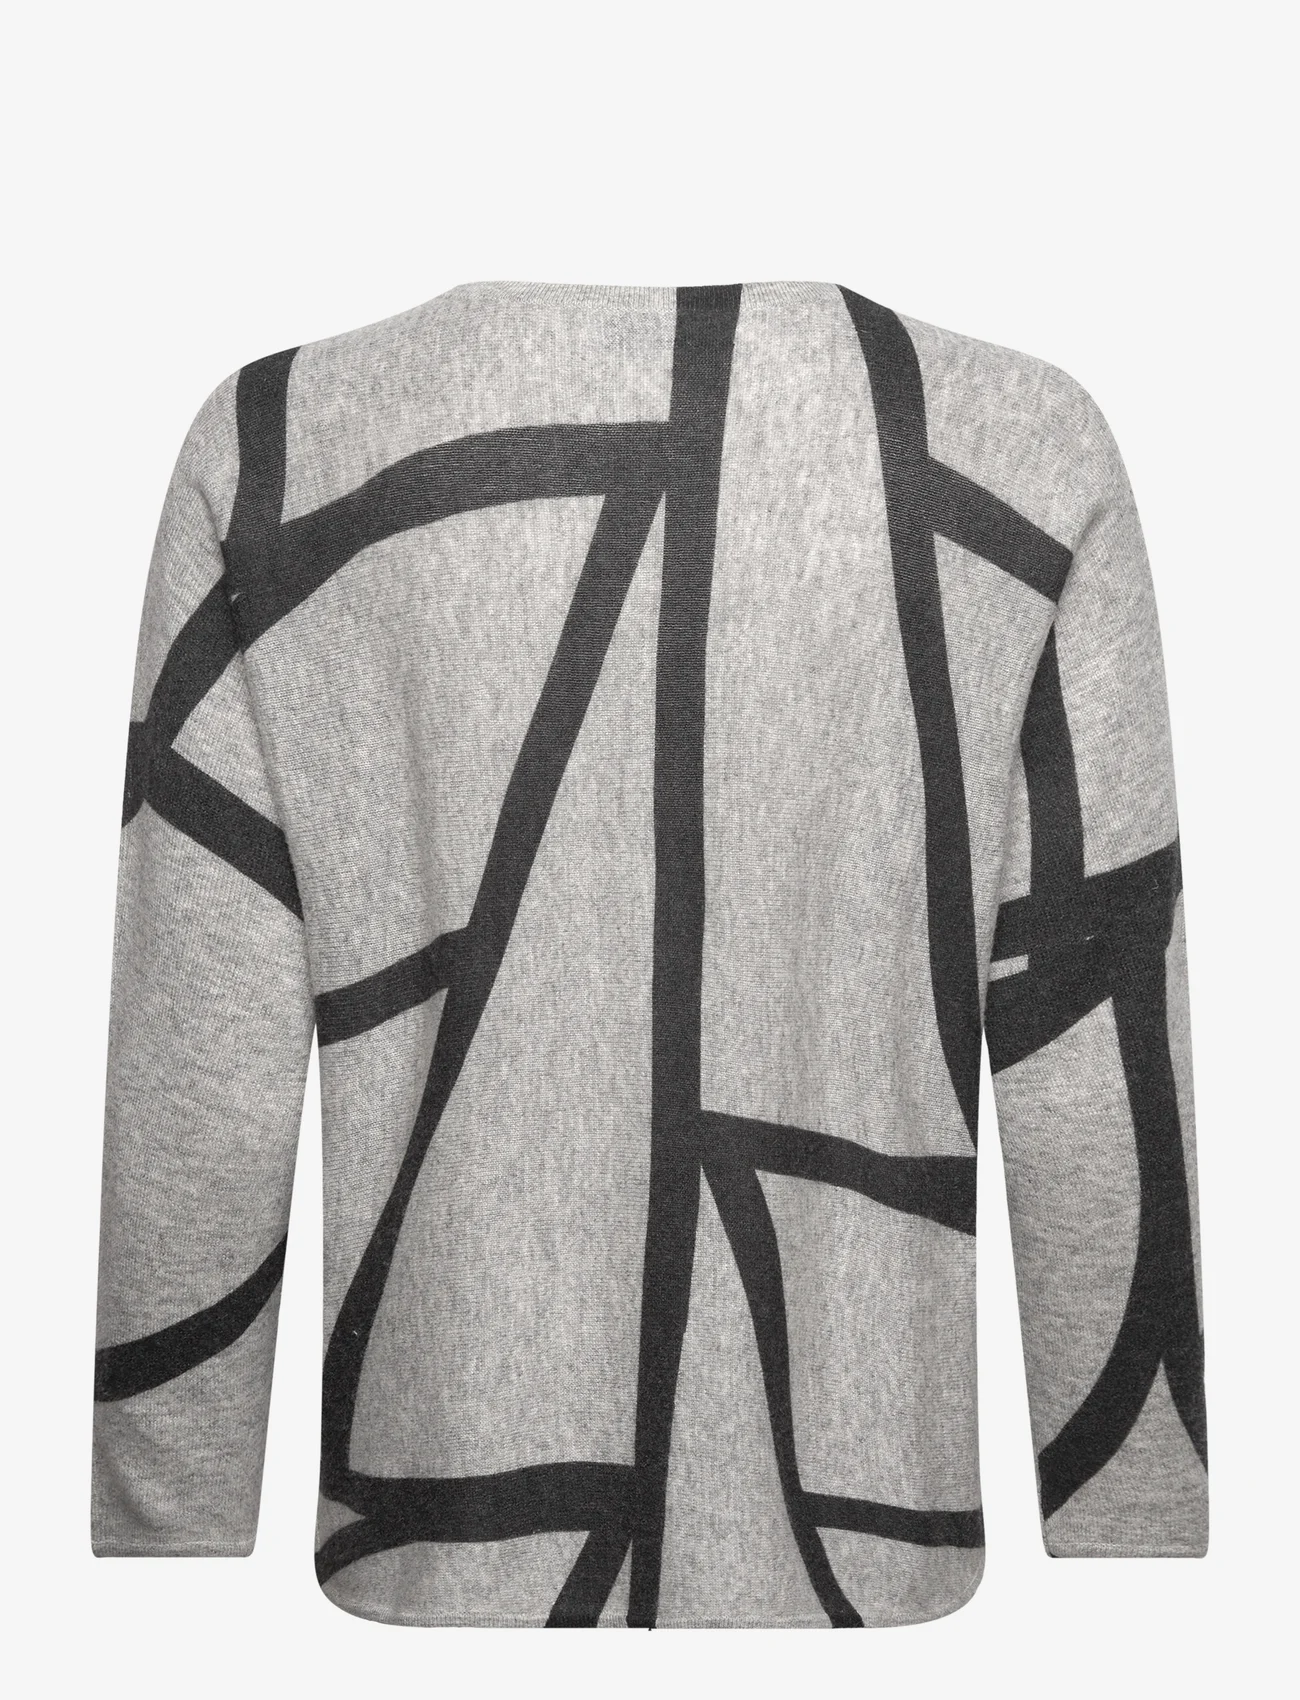 Davida Cashmere - Curved Logo - swetry - light grey / black - 1